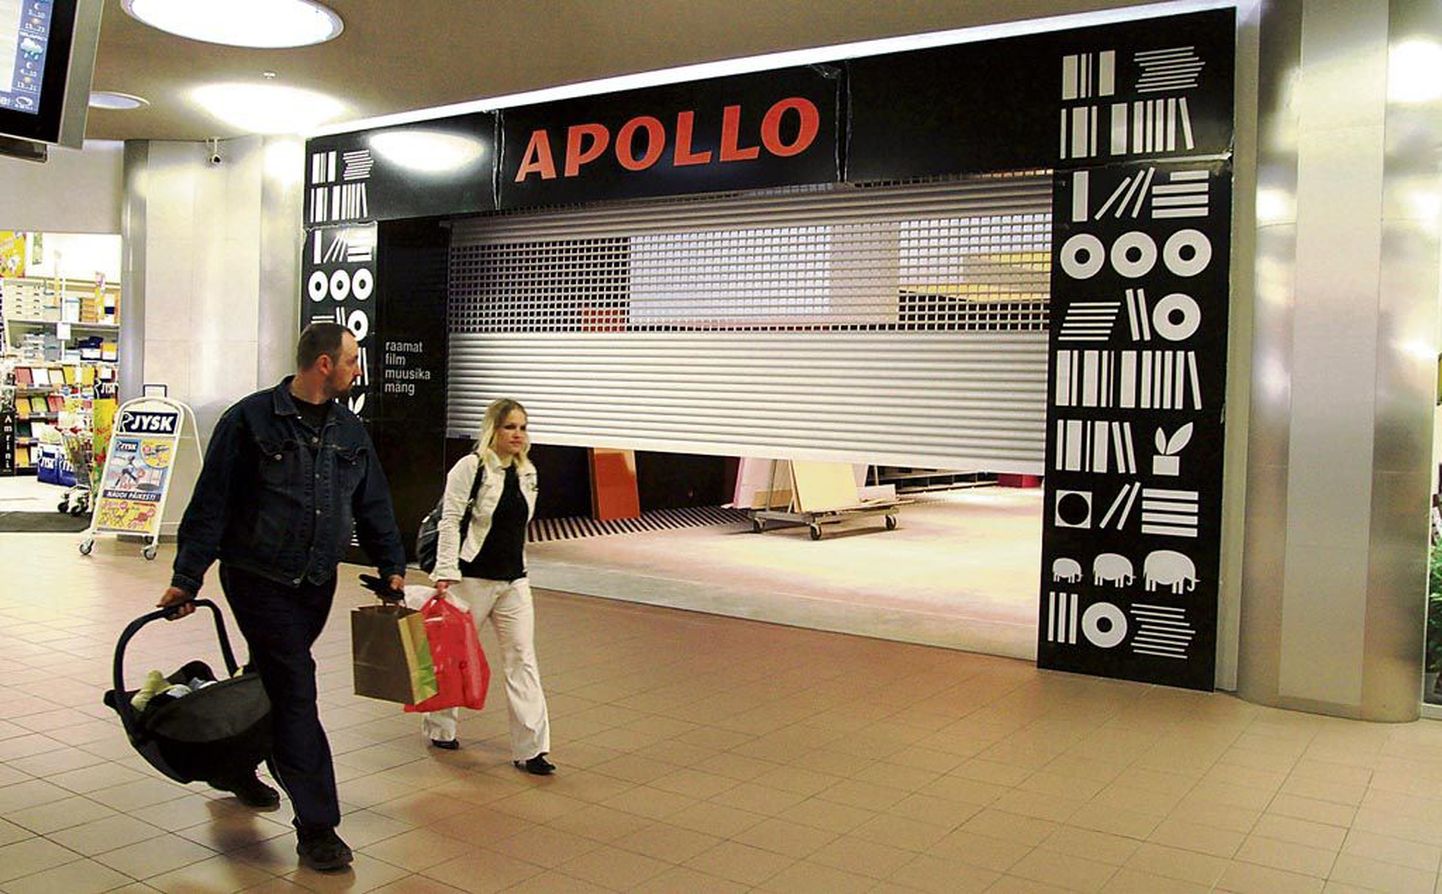 Apollo raamatukauplus.